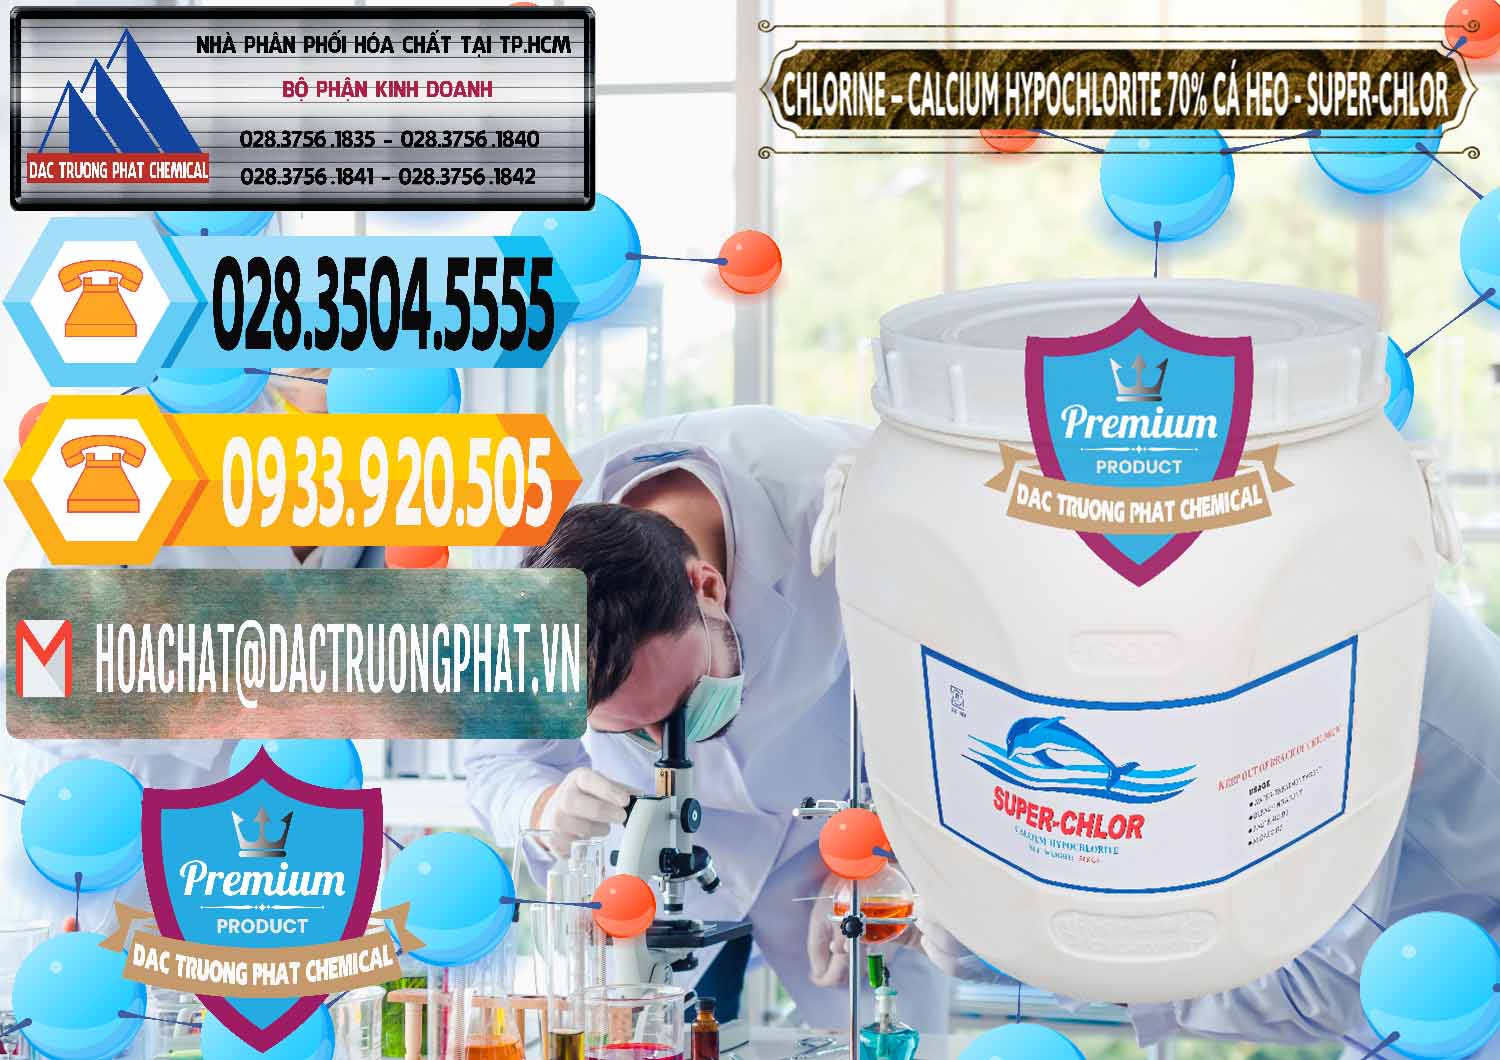 Nơi chuyên kinh doanh & bán Clorin - Chlorine Cá Heo 70% Super Chlor Trung Quốc China - 0058 - Đơn vị chuyên nhập khẩu & cung cấp hóa chất tại TP.HCM - hoachattayrua.net